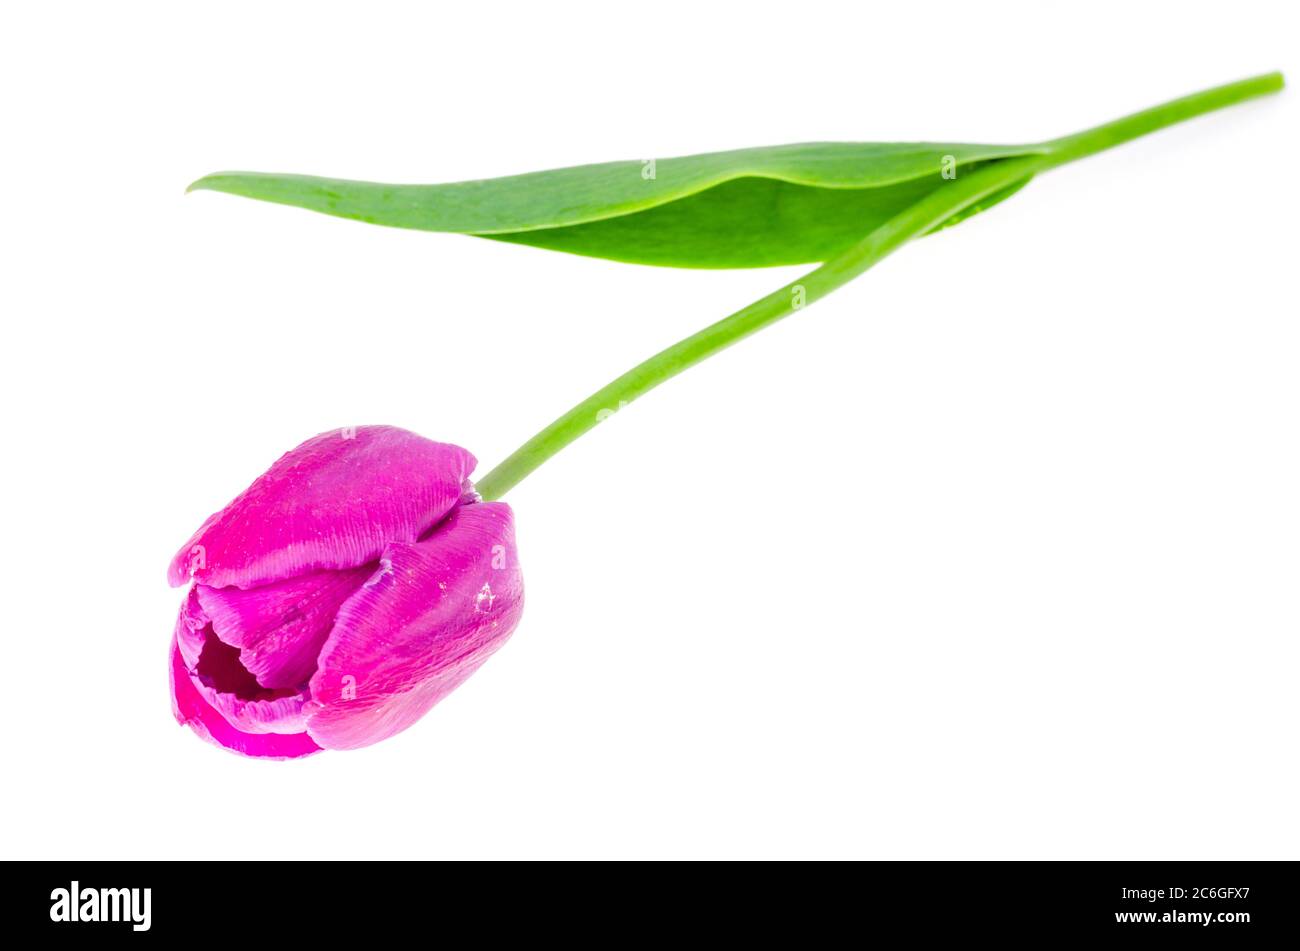 Single burgundy tulip on white background. Photo Stock Photo